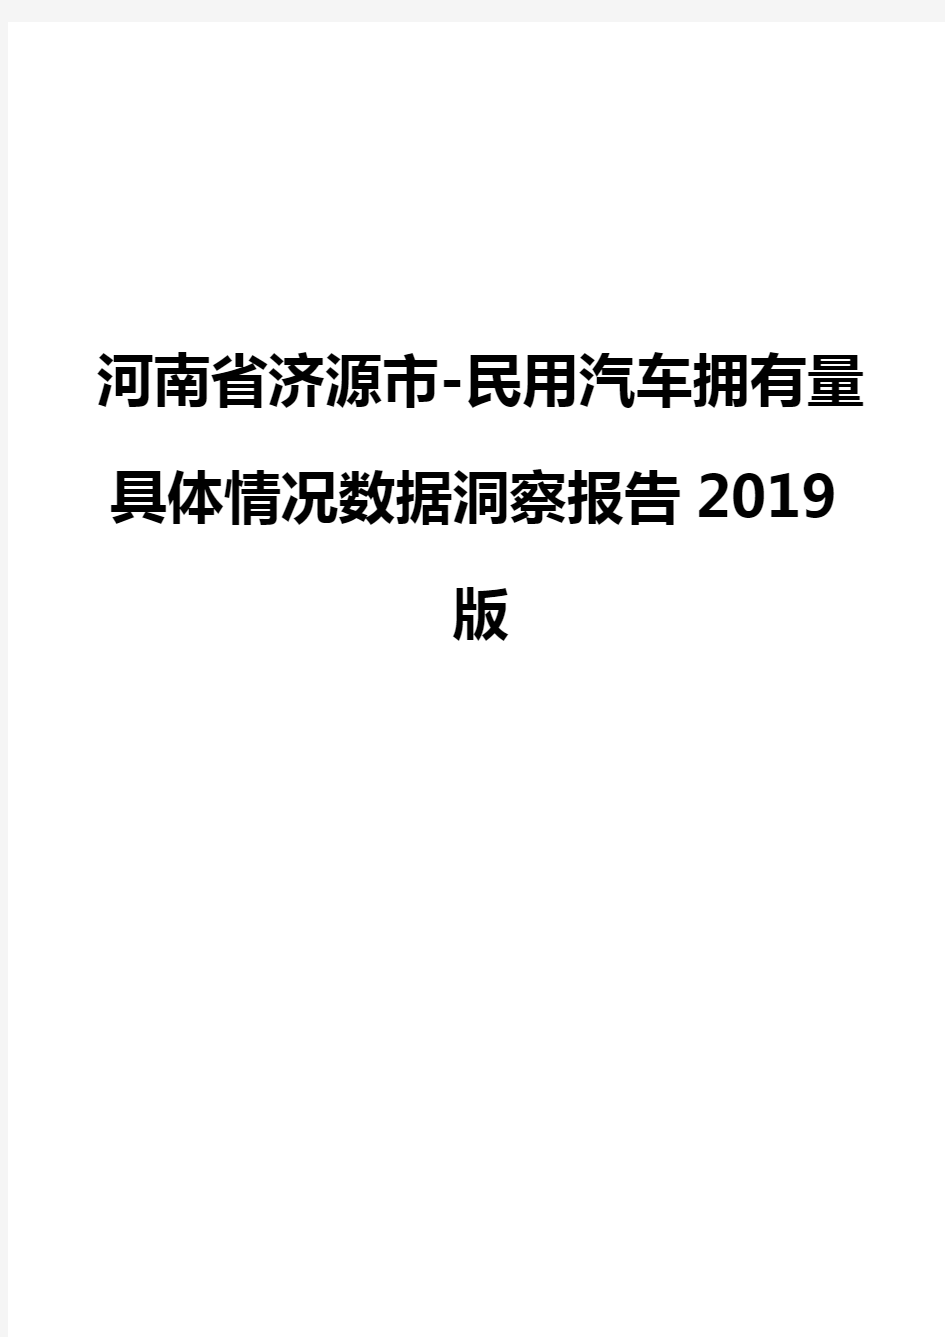 河南省济源市-民用汽车拥有量具体情况数据洞察报告2019版